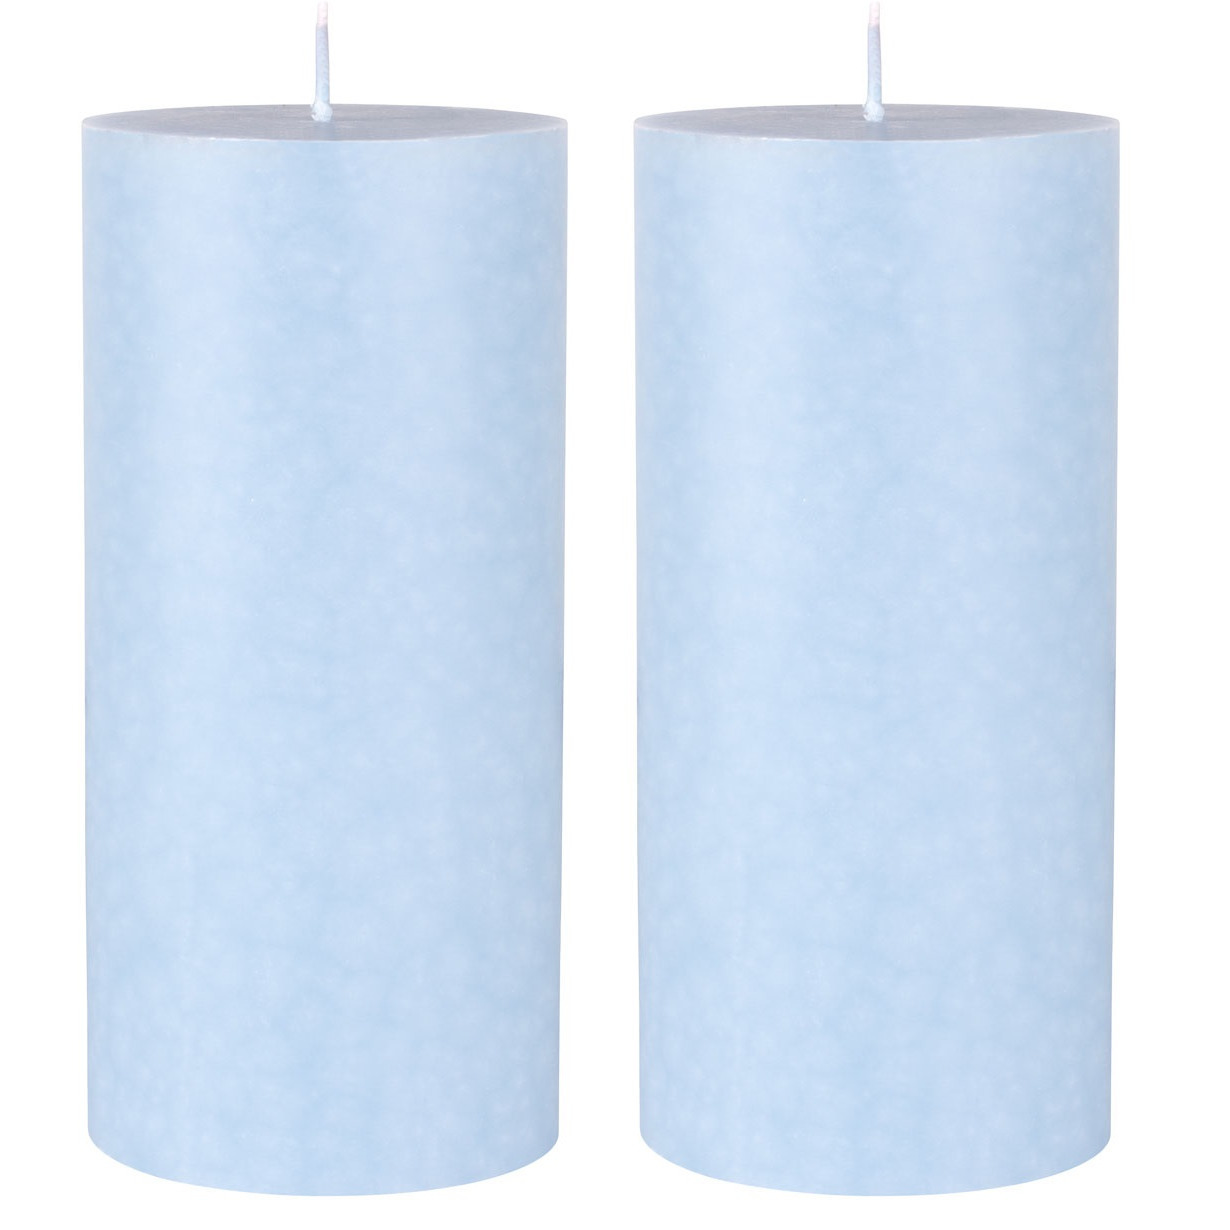 3x stuks lichtblauwe cilinder kaarsen -stompkaarsen 15 x 7 cm 50 branduren sfeerkaarsen lichtblauw